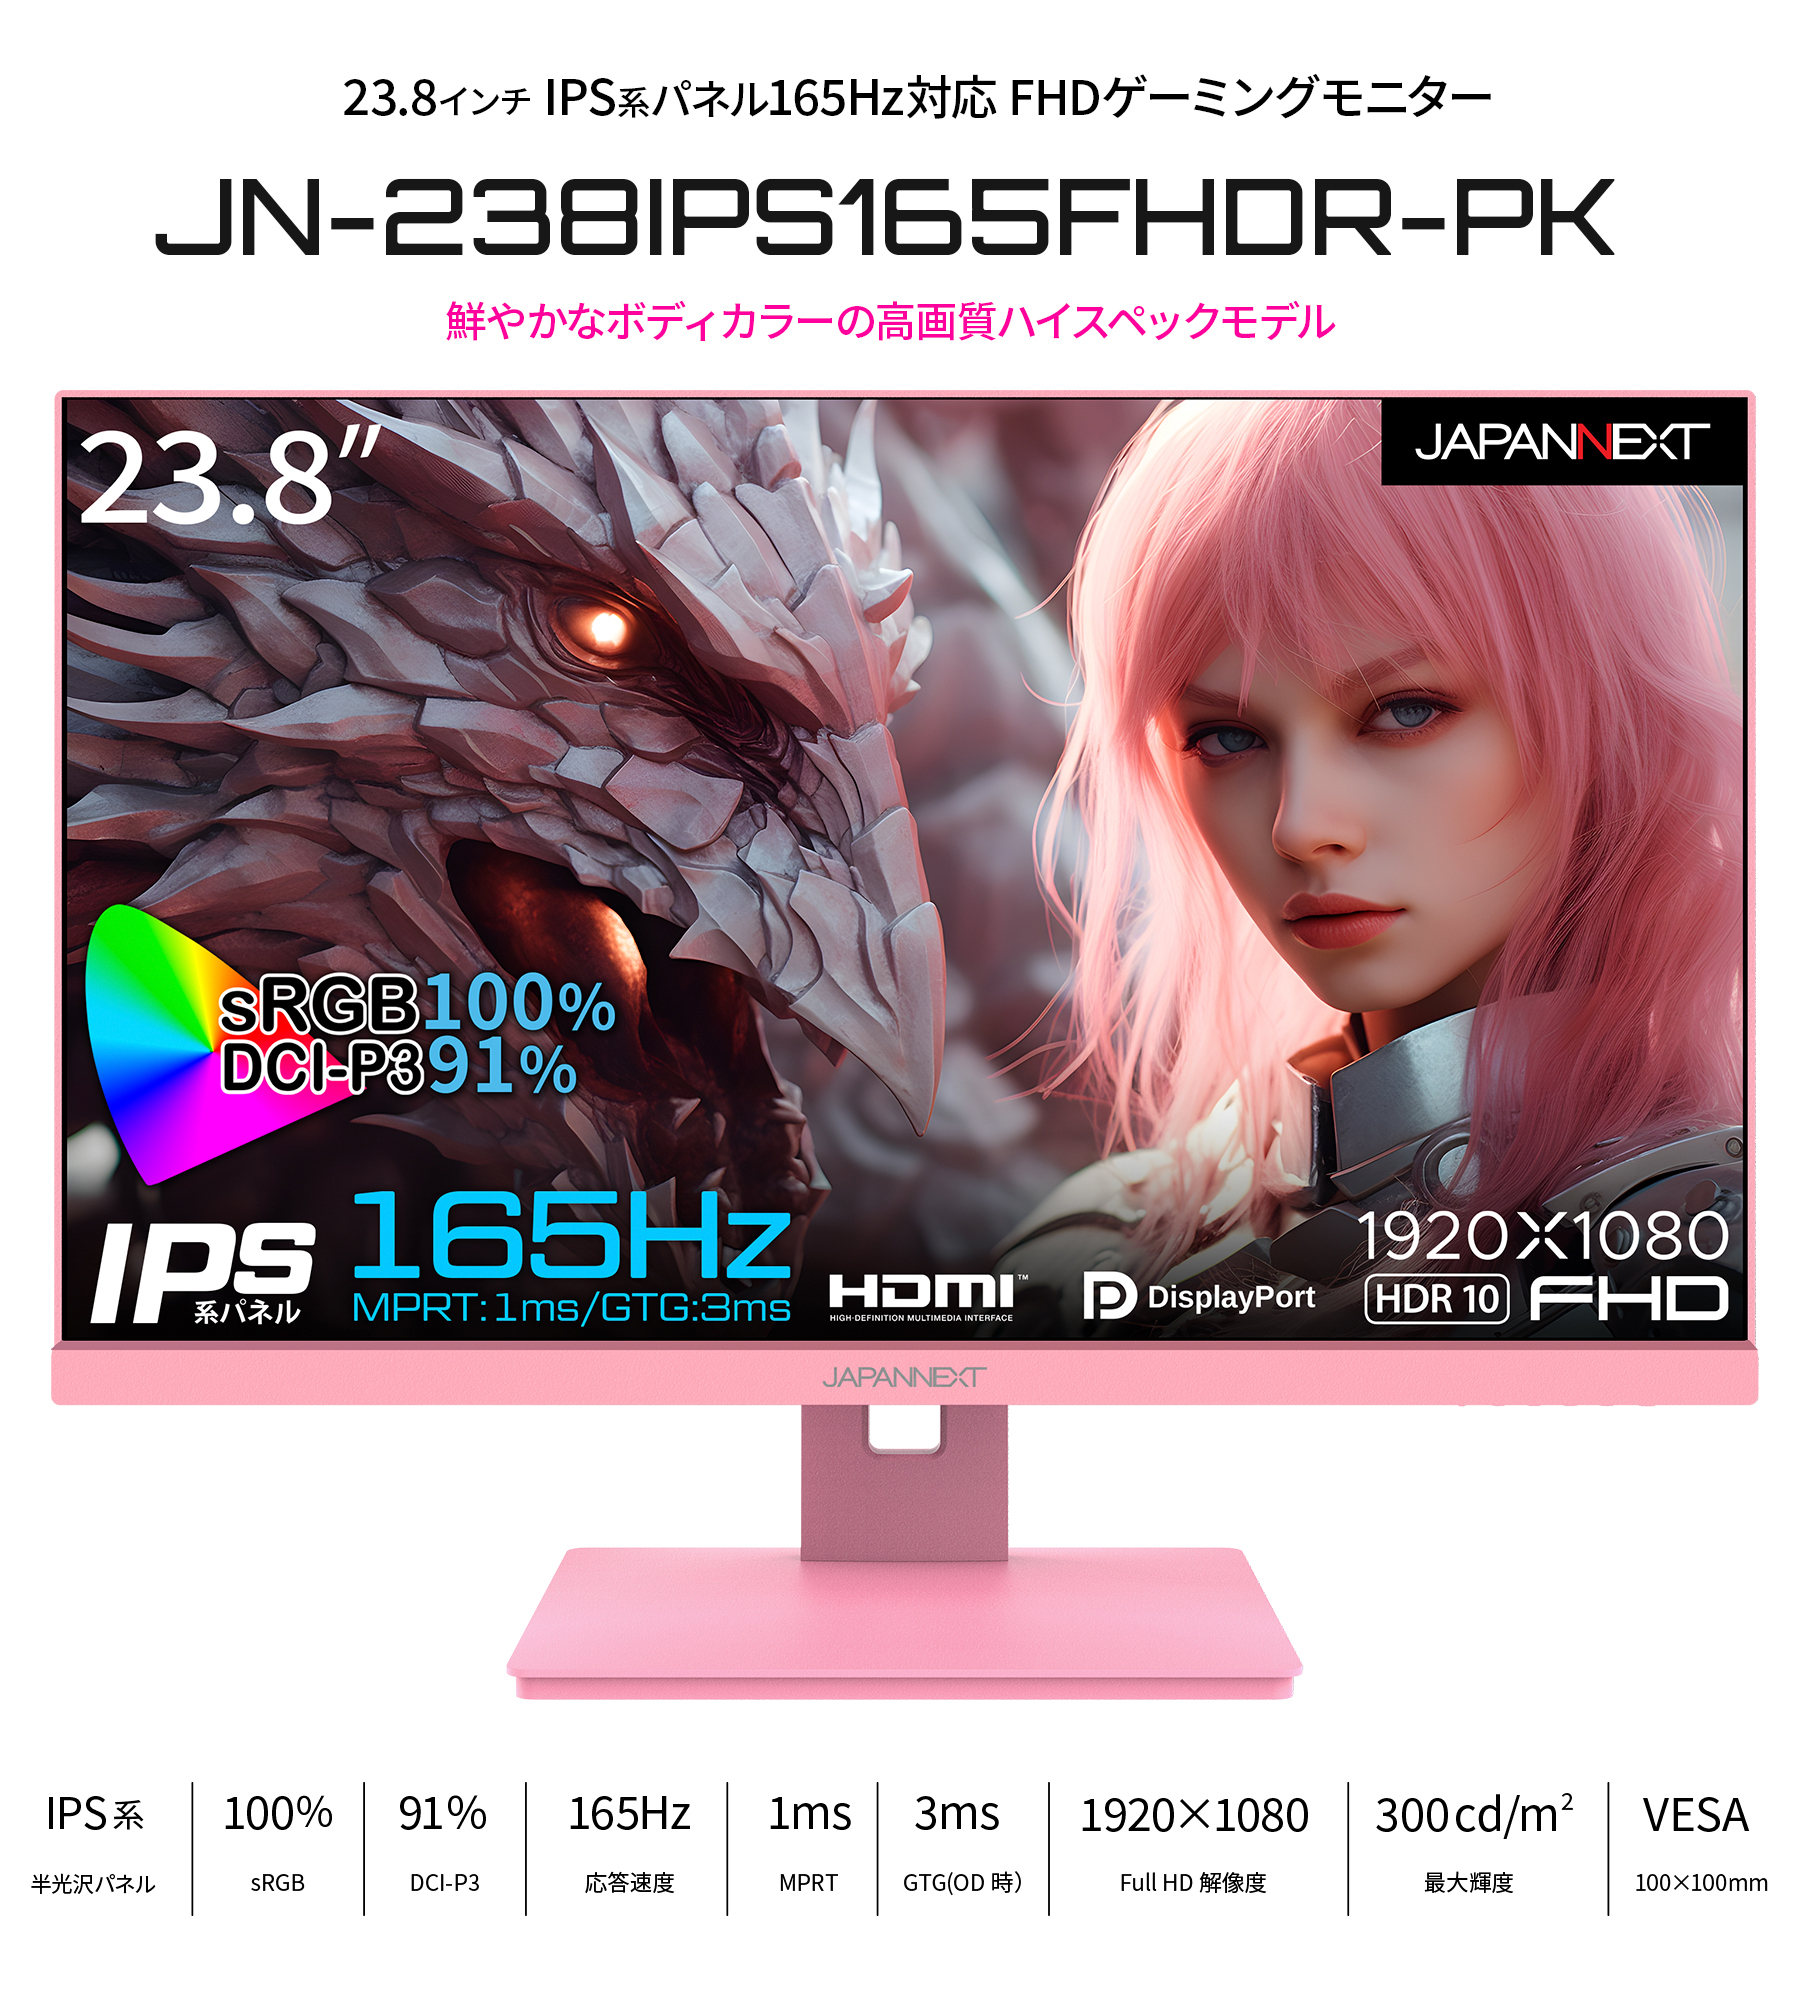 JAPANNEXT 23.8インチ IPS フルHD(1920x1080)ゲーミングモニター JN-238Gi165FHDR-HSP 1ms 165Hz リフレッシュレート sRGB100 ジャパンネクスト